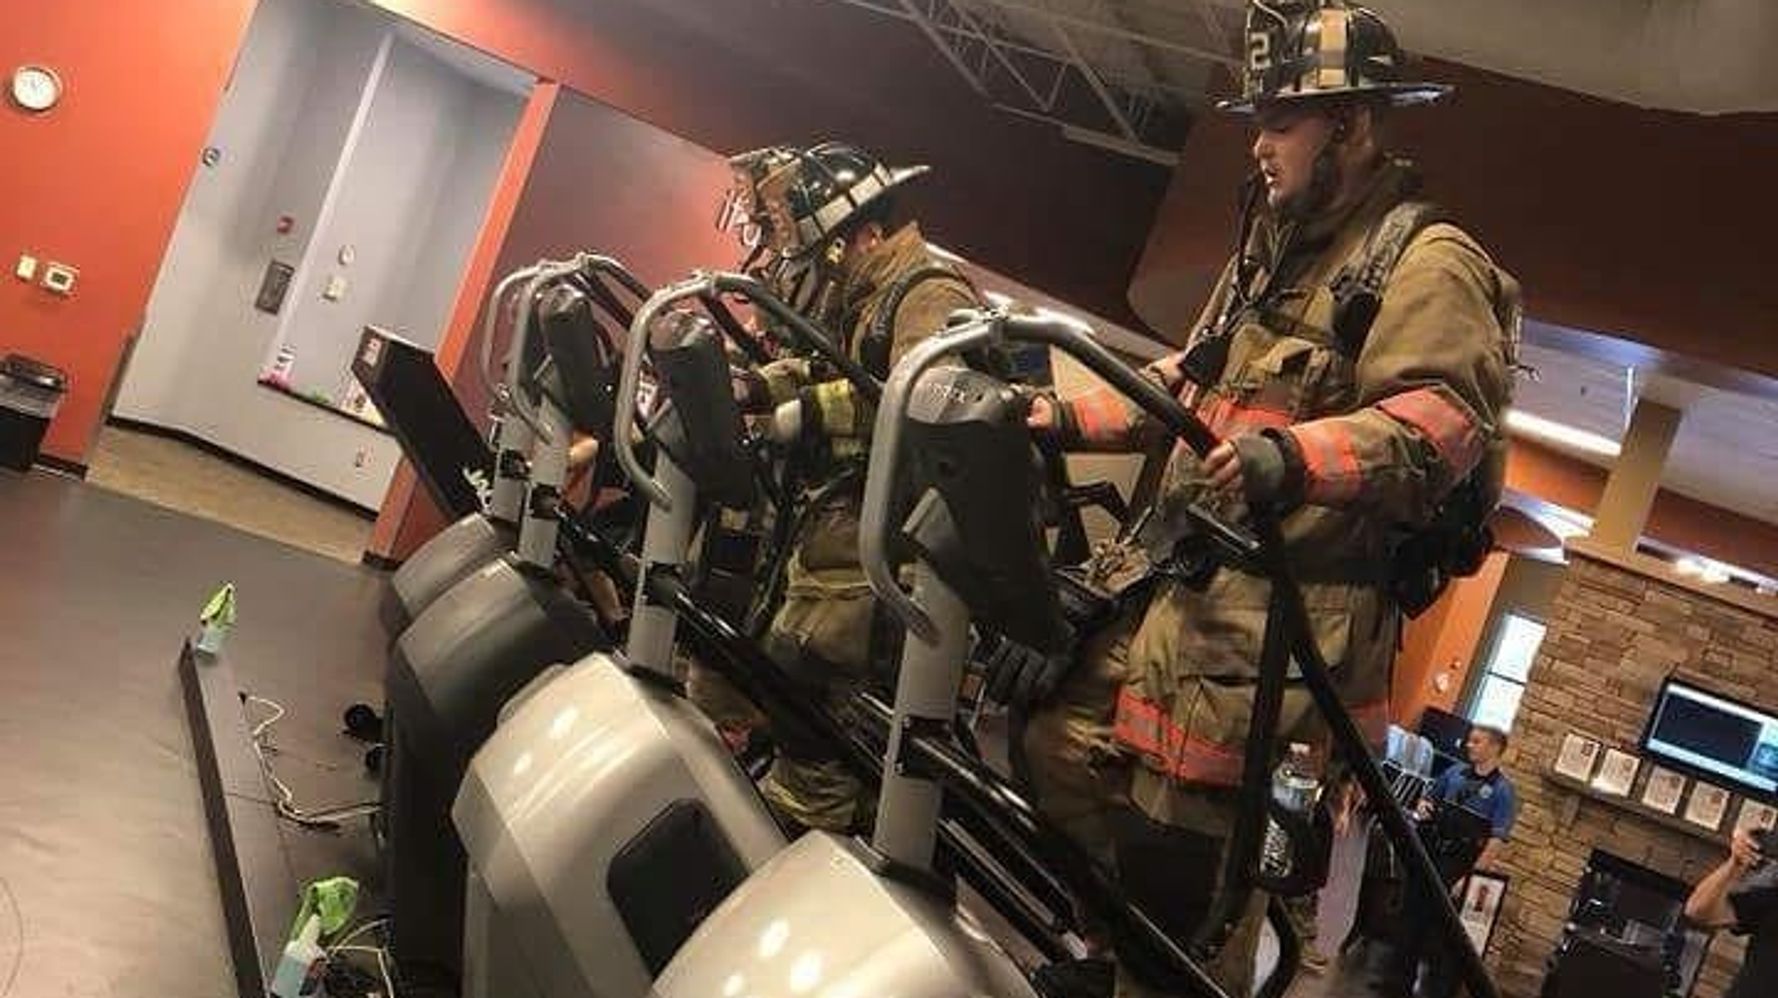 アメリカ同時多発テロを追悼する 110段の階段上り 消防士らが命を落とした仲間に捧げる ハフポスト World